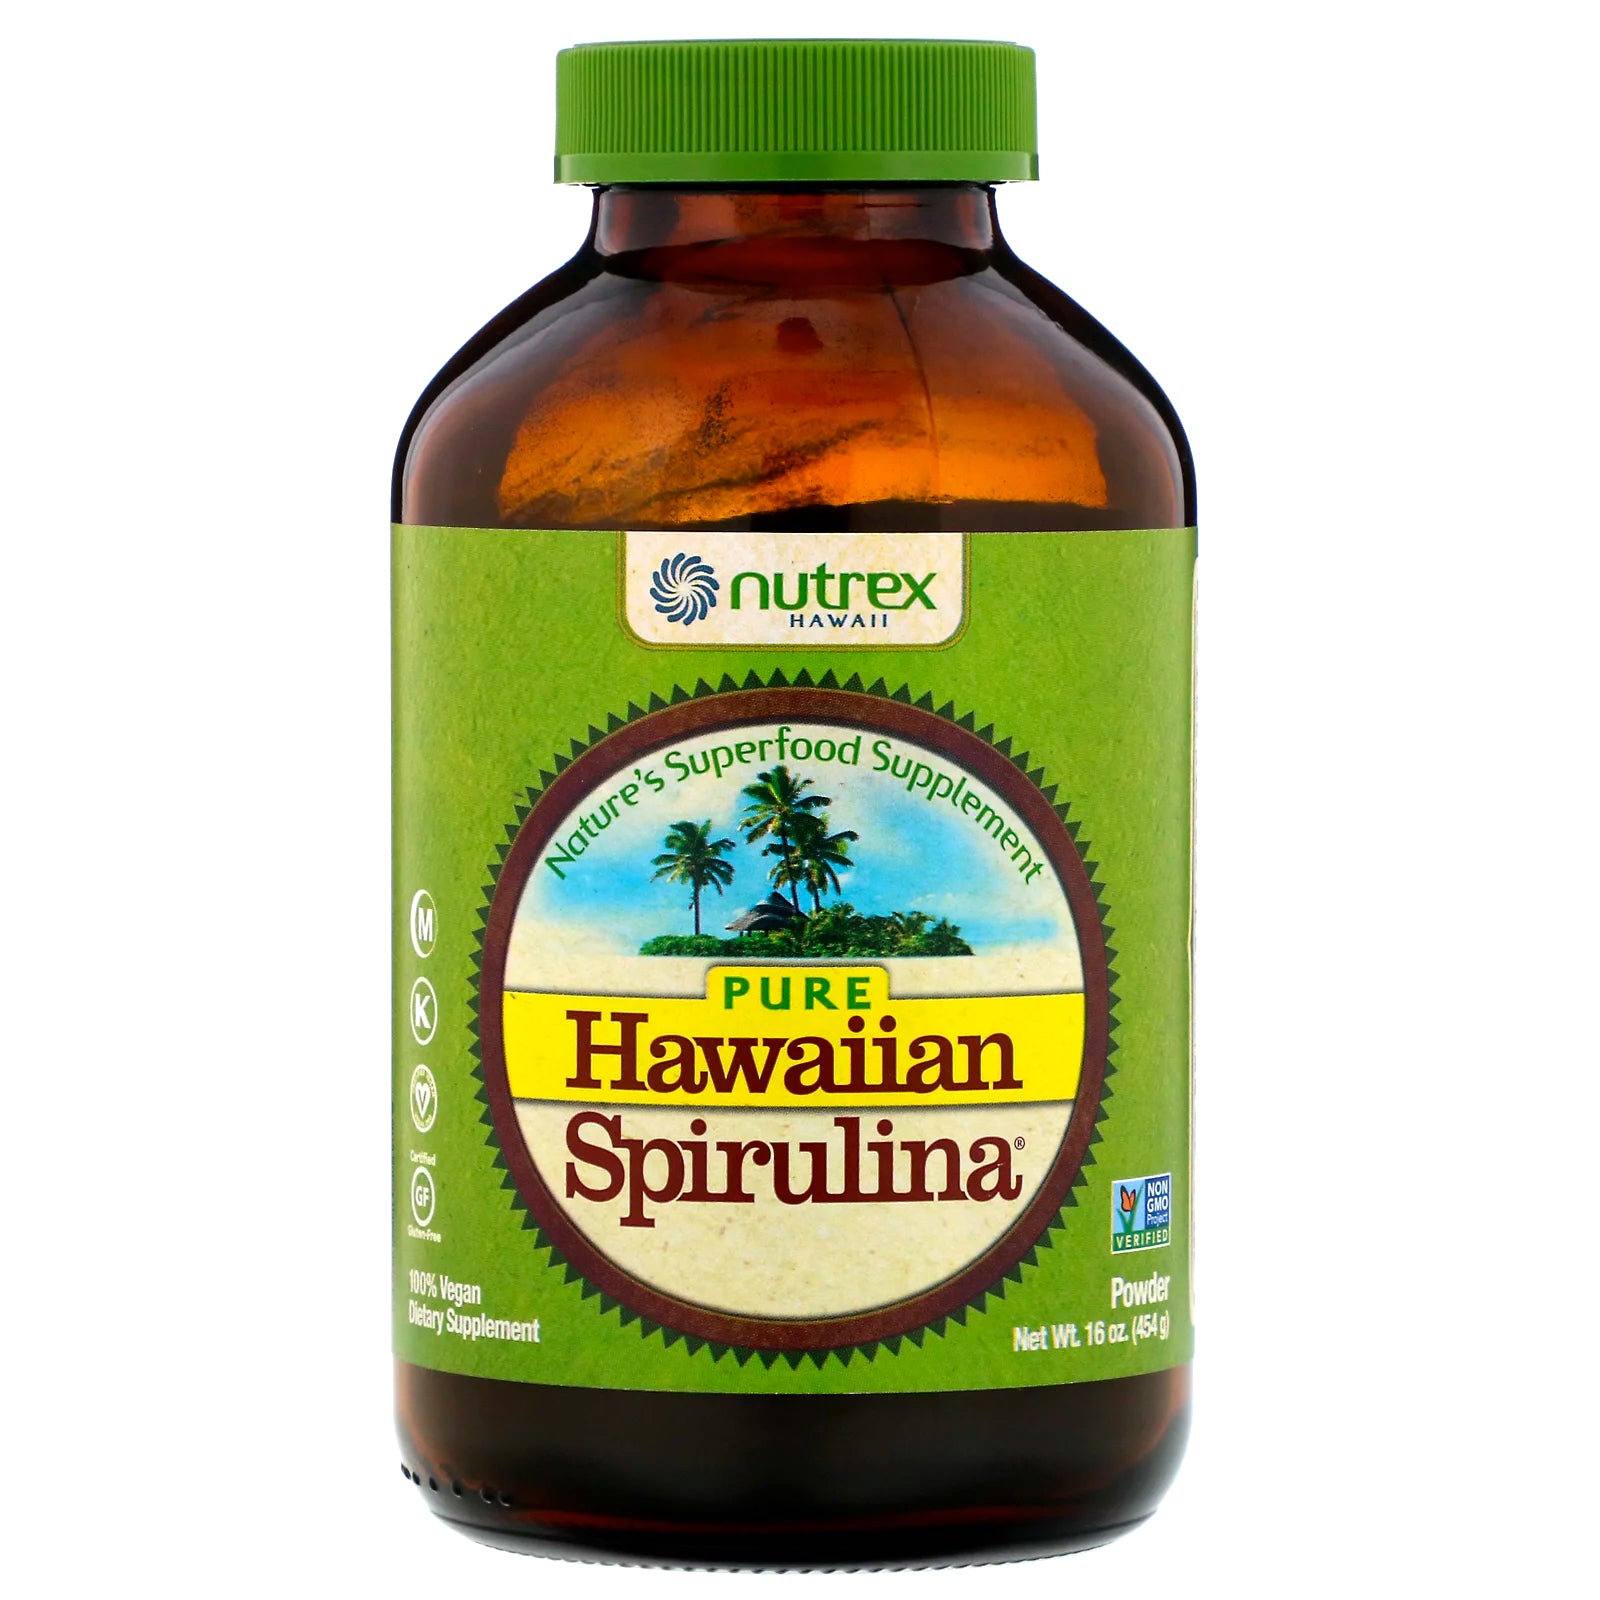 Nutrex Hawaii, Pure Hawaiian Spirulina, Powder, 16 oz (454 g)